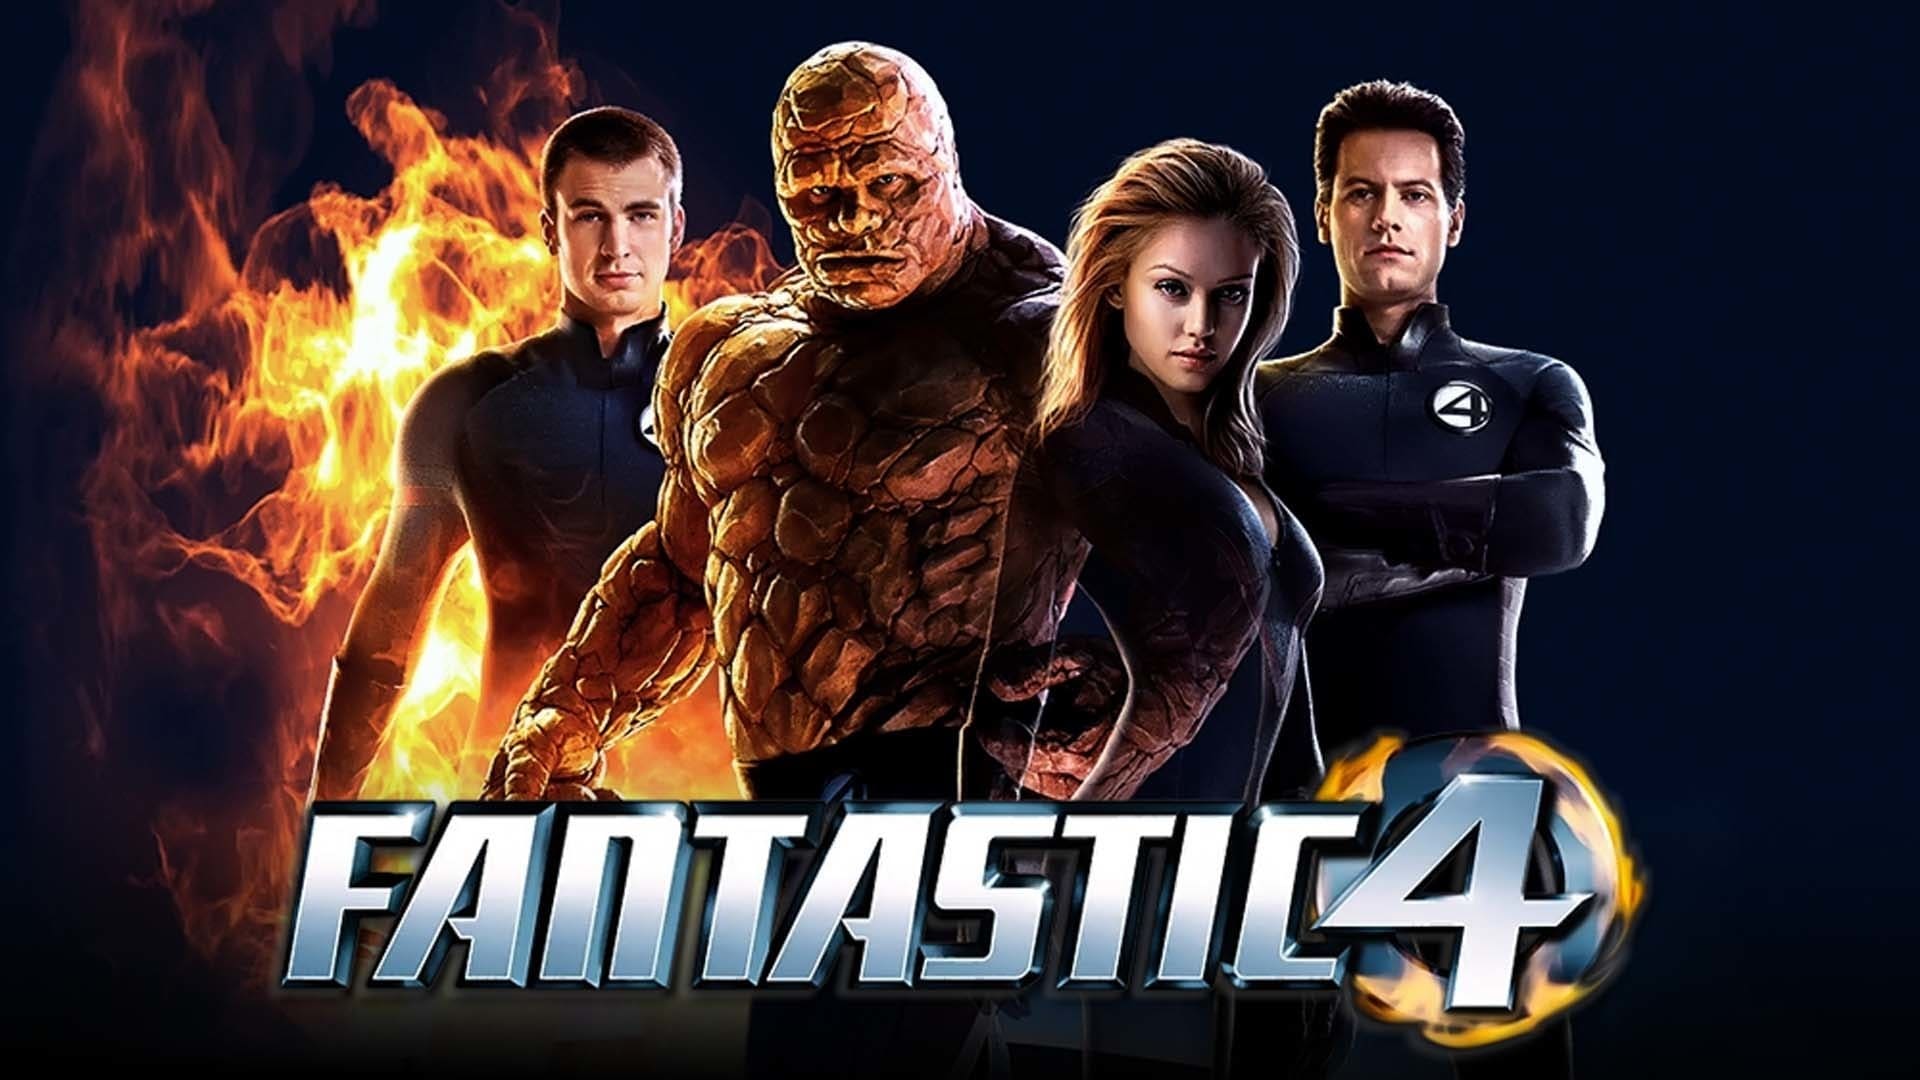 I Fantastici 4 (2005)